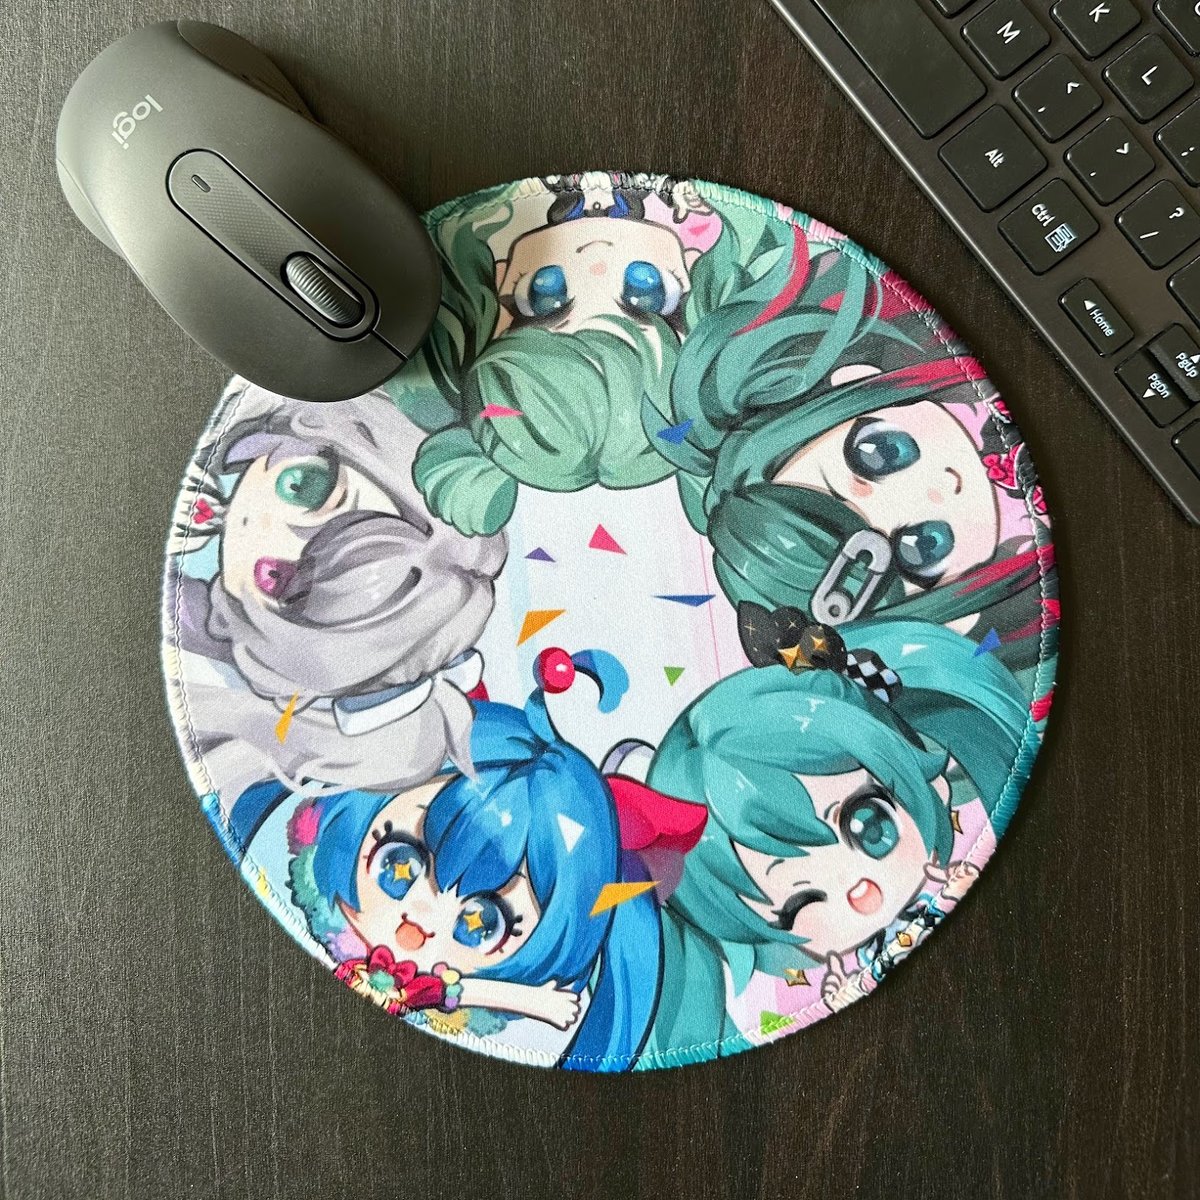 Image of Hatsune Miku Project Sekai Round Mousemat